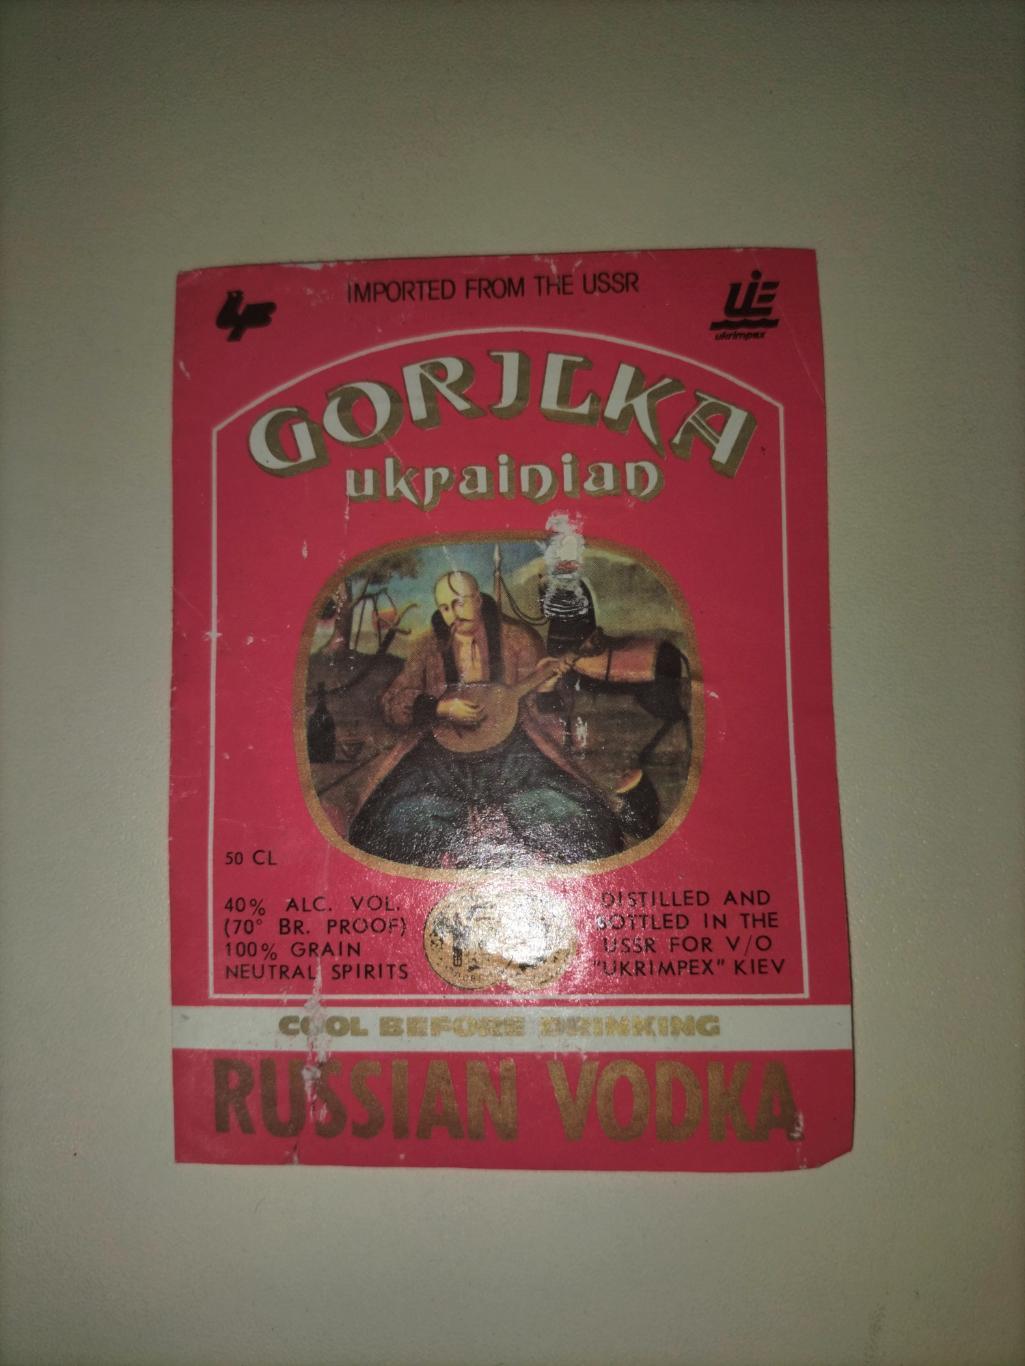 Gorilka Ukrainian